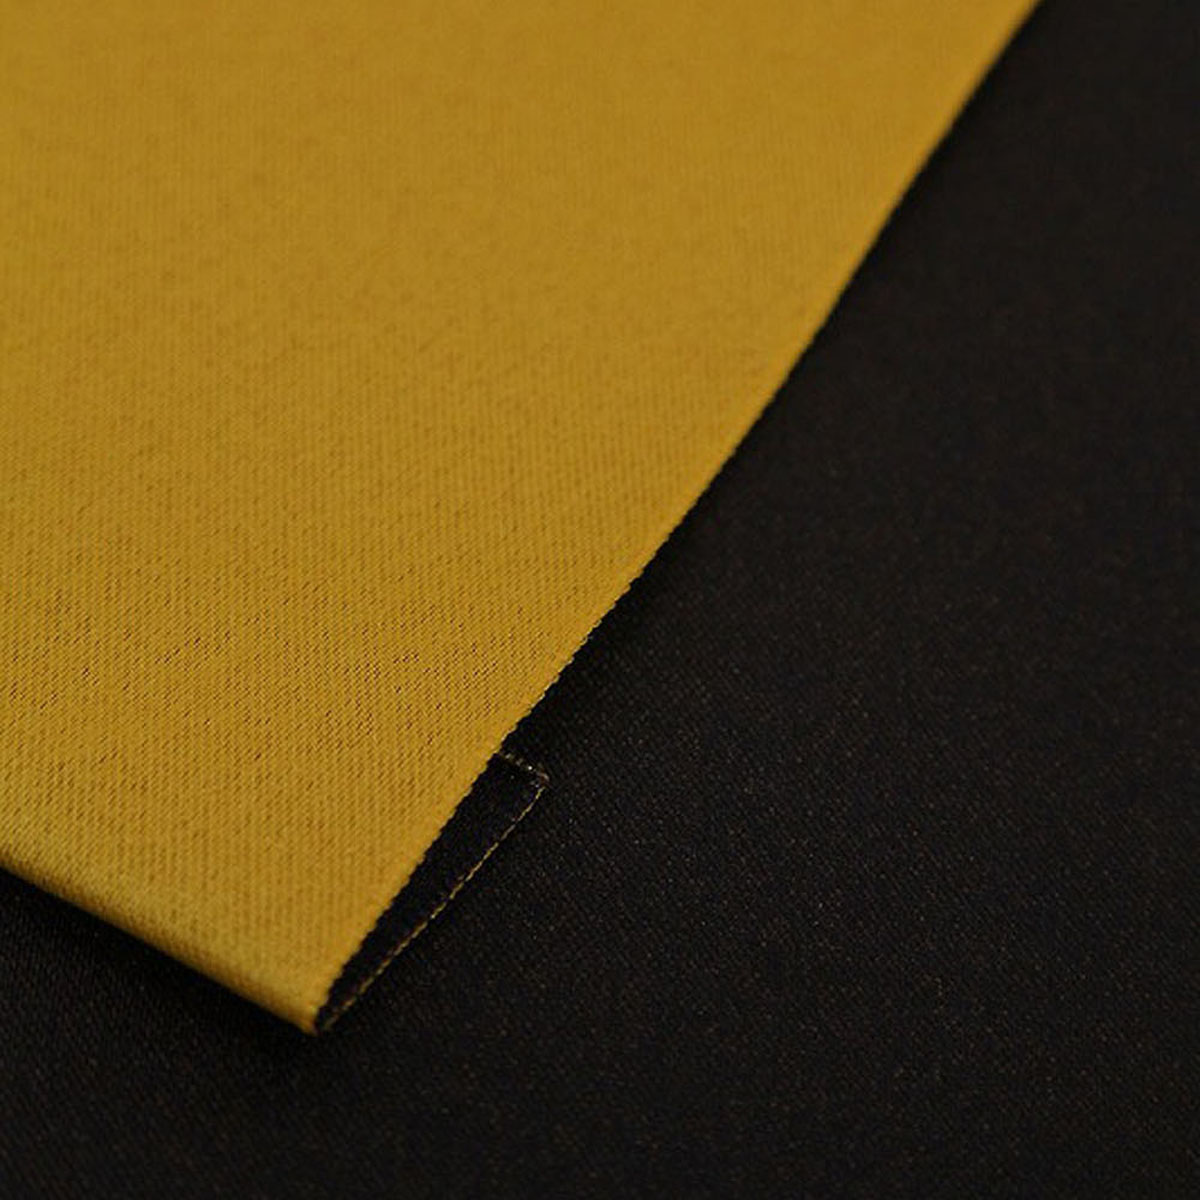  юката obi конструкция obi женский желтый цвет × чёрный двусторонний юката obi только создание obi простой ... obi ... взрослый пояс оби мусуби с лентой obi фейерверк сделано в Японии чёрный желтый 